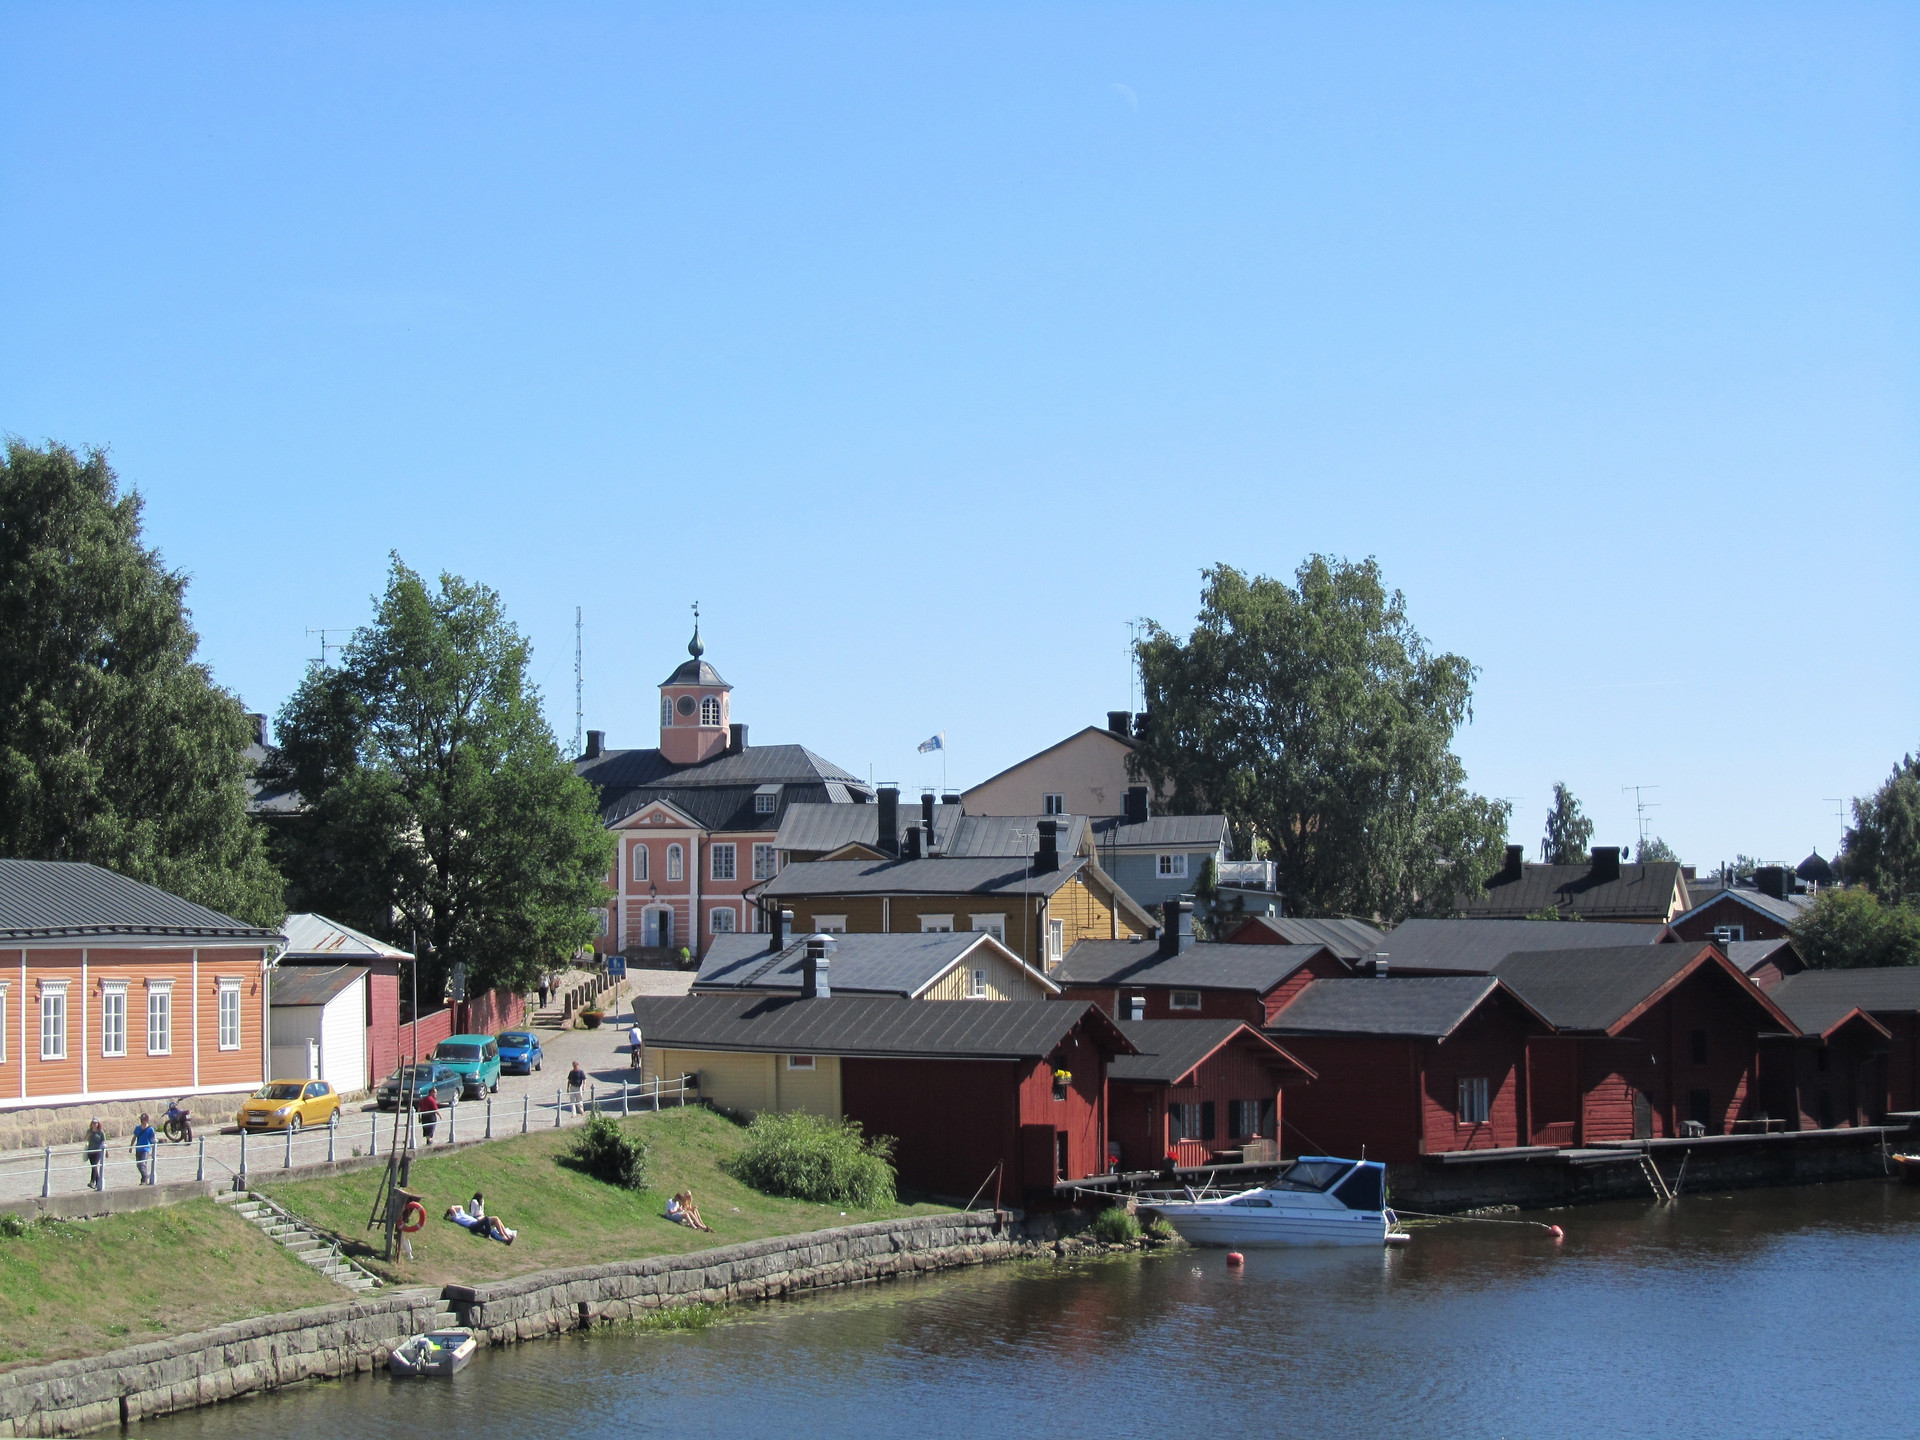 芬兰最古老城市,由瑞典人建立,曾经做过芬兰首都